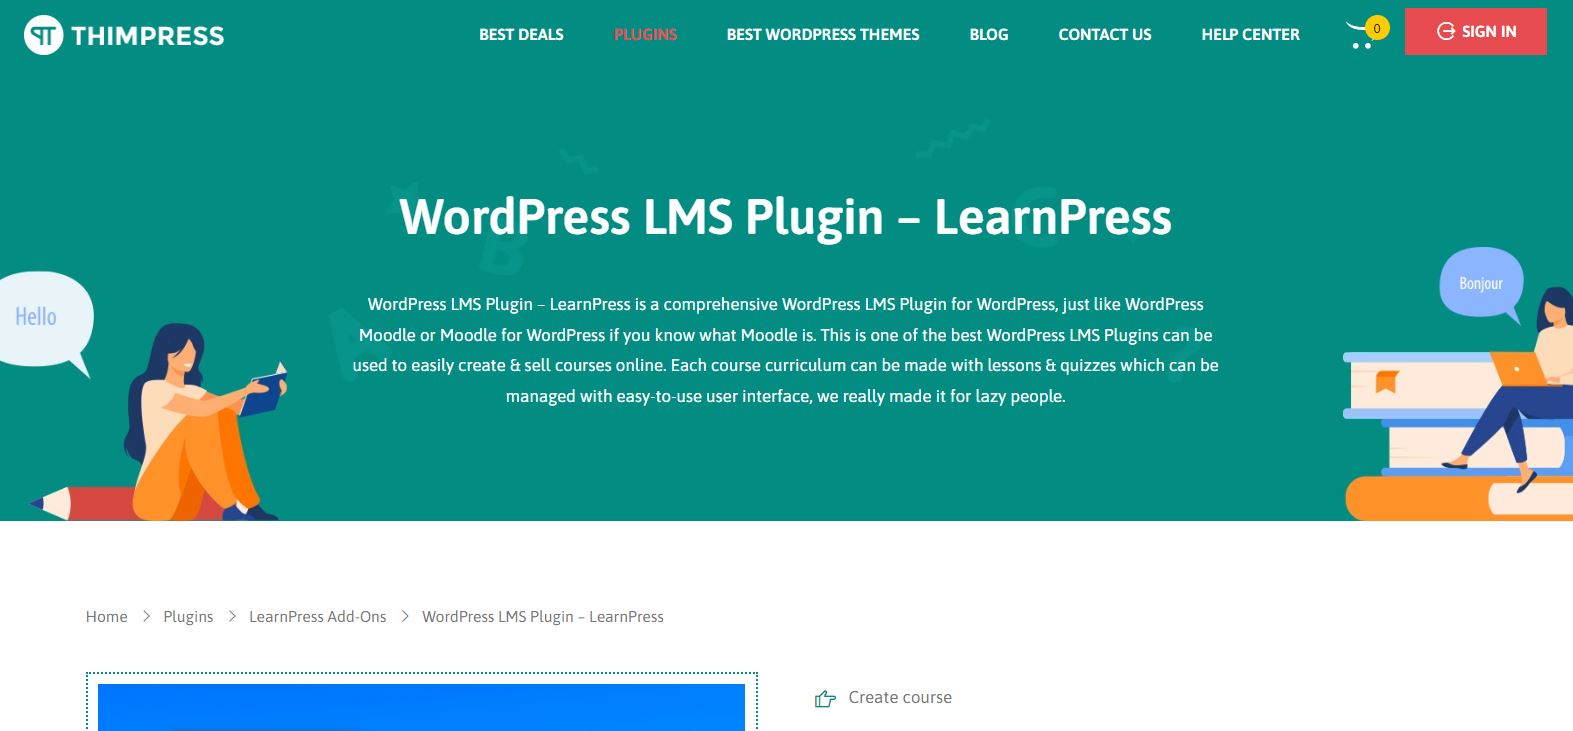 Thimpress LearnPress Plugin